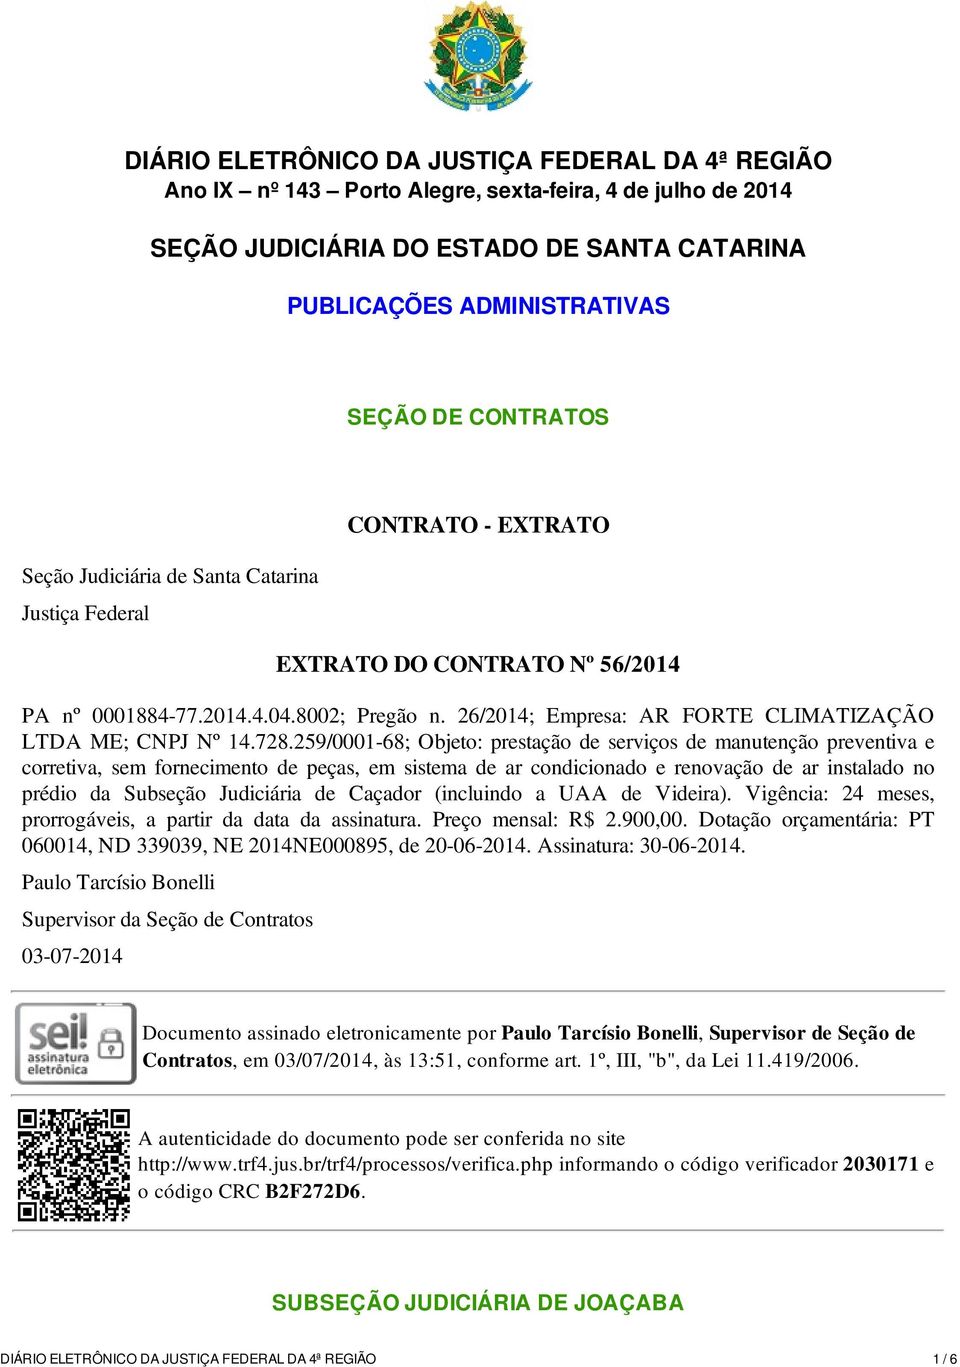 26/2014; Empresa: AR FORTE CLIMATIZAÇÃO LTDA ME; CNPJ Nº 14.728.